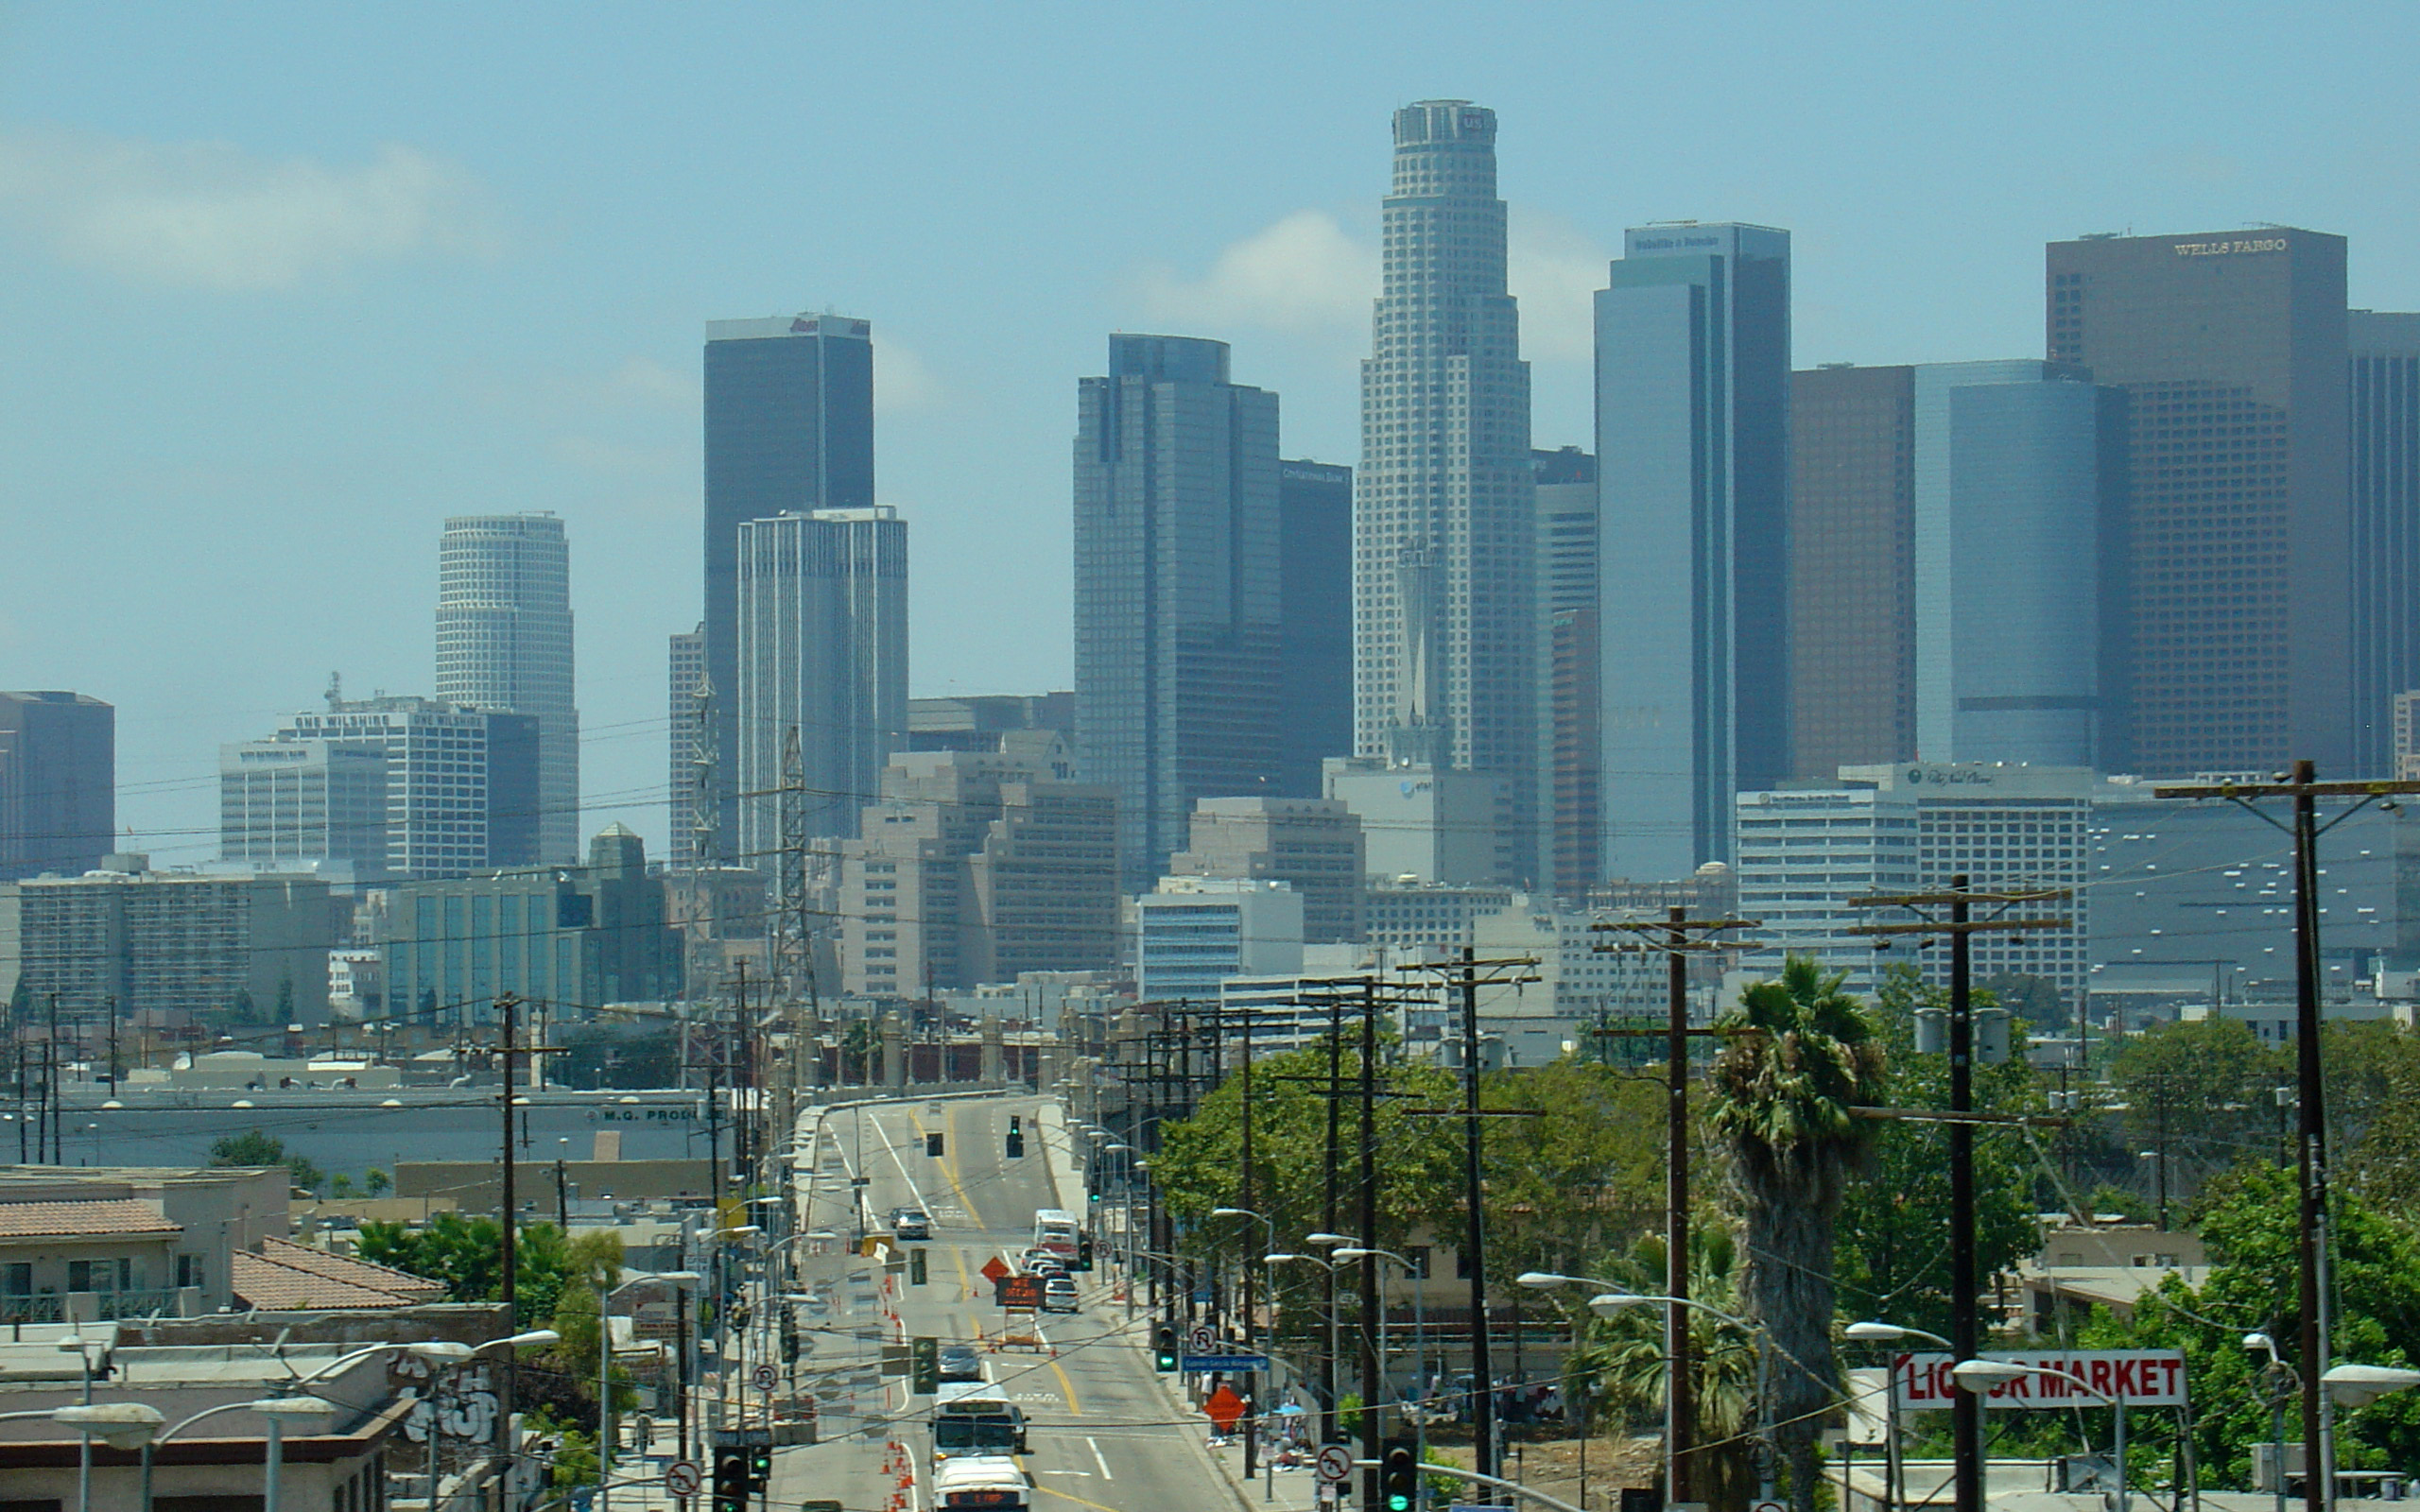 Los Angeles skyline image